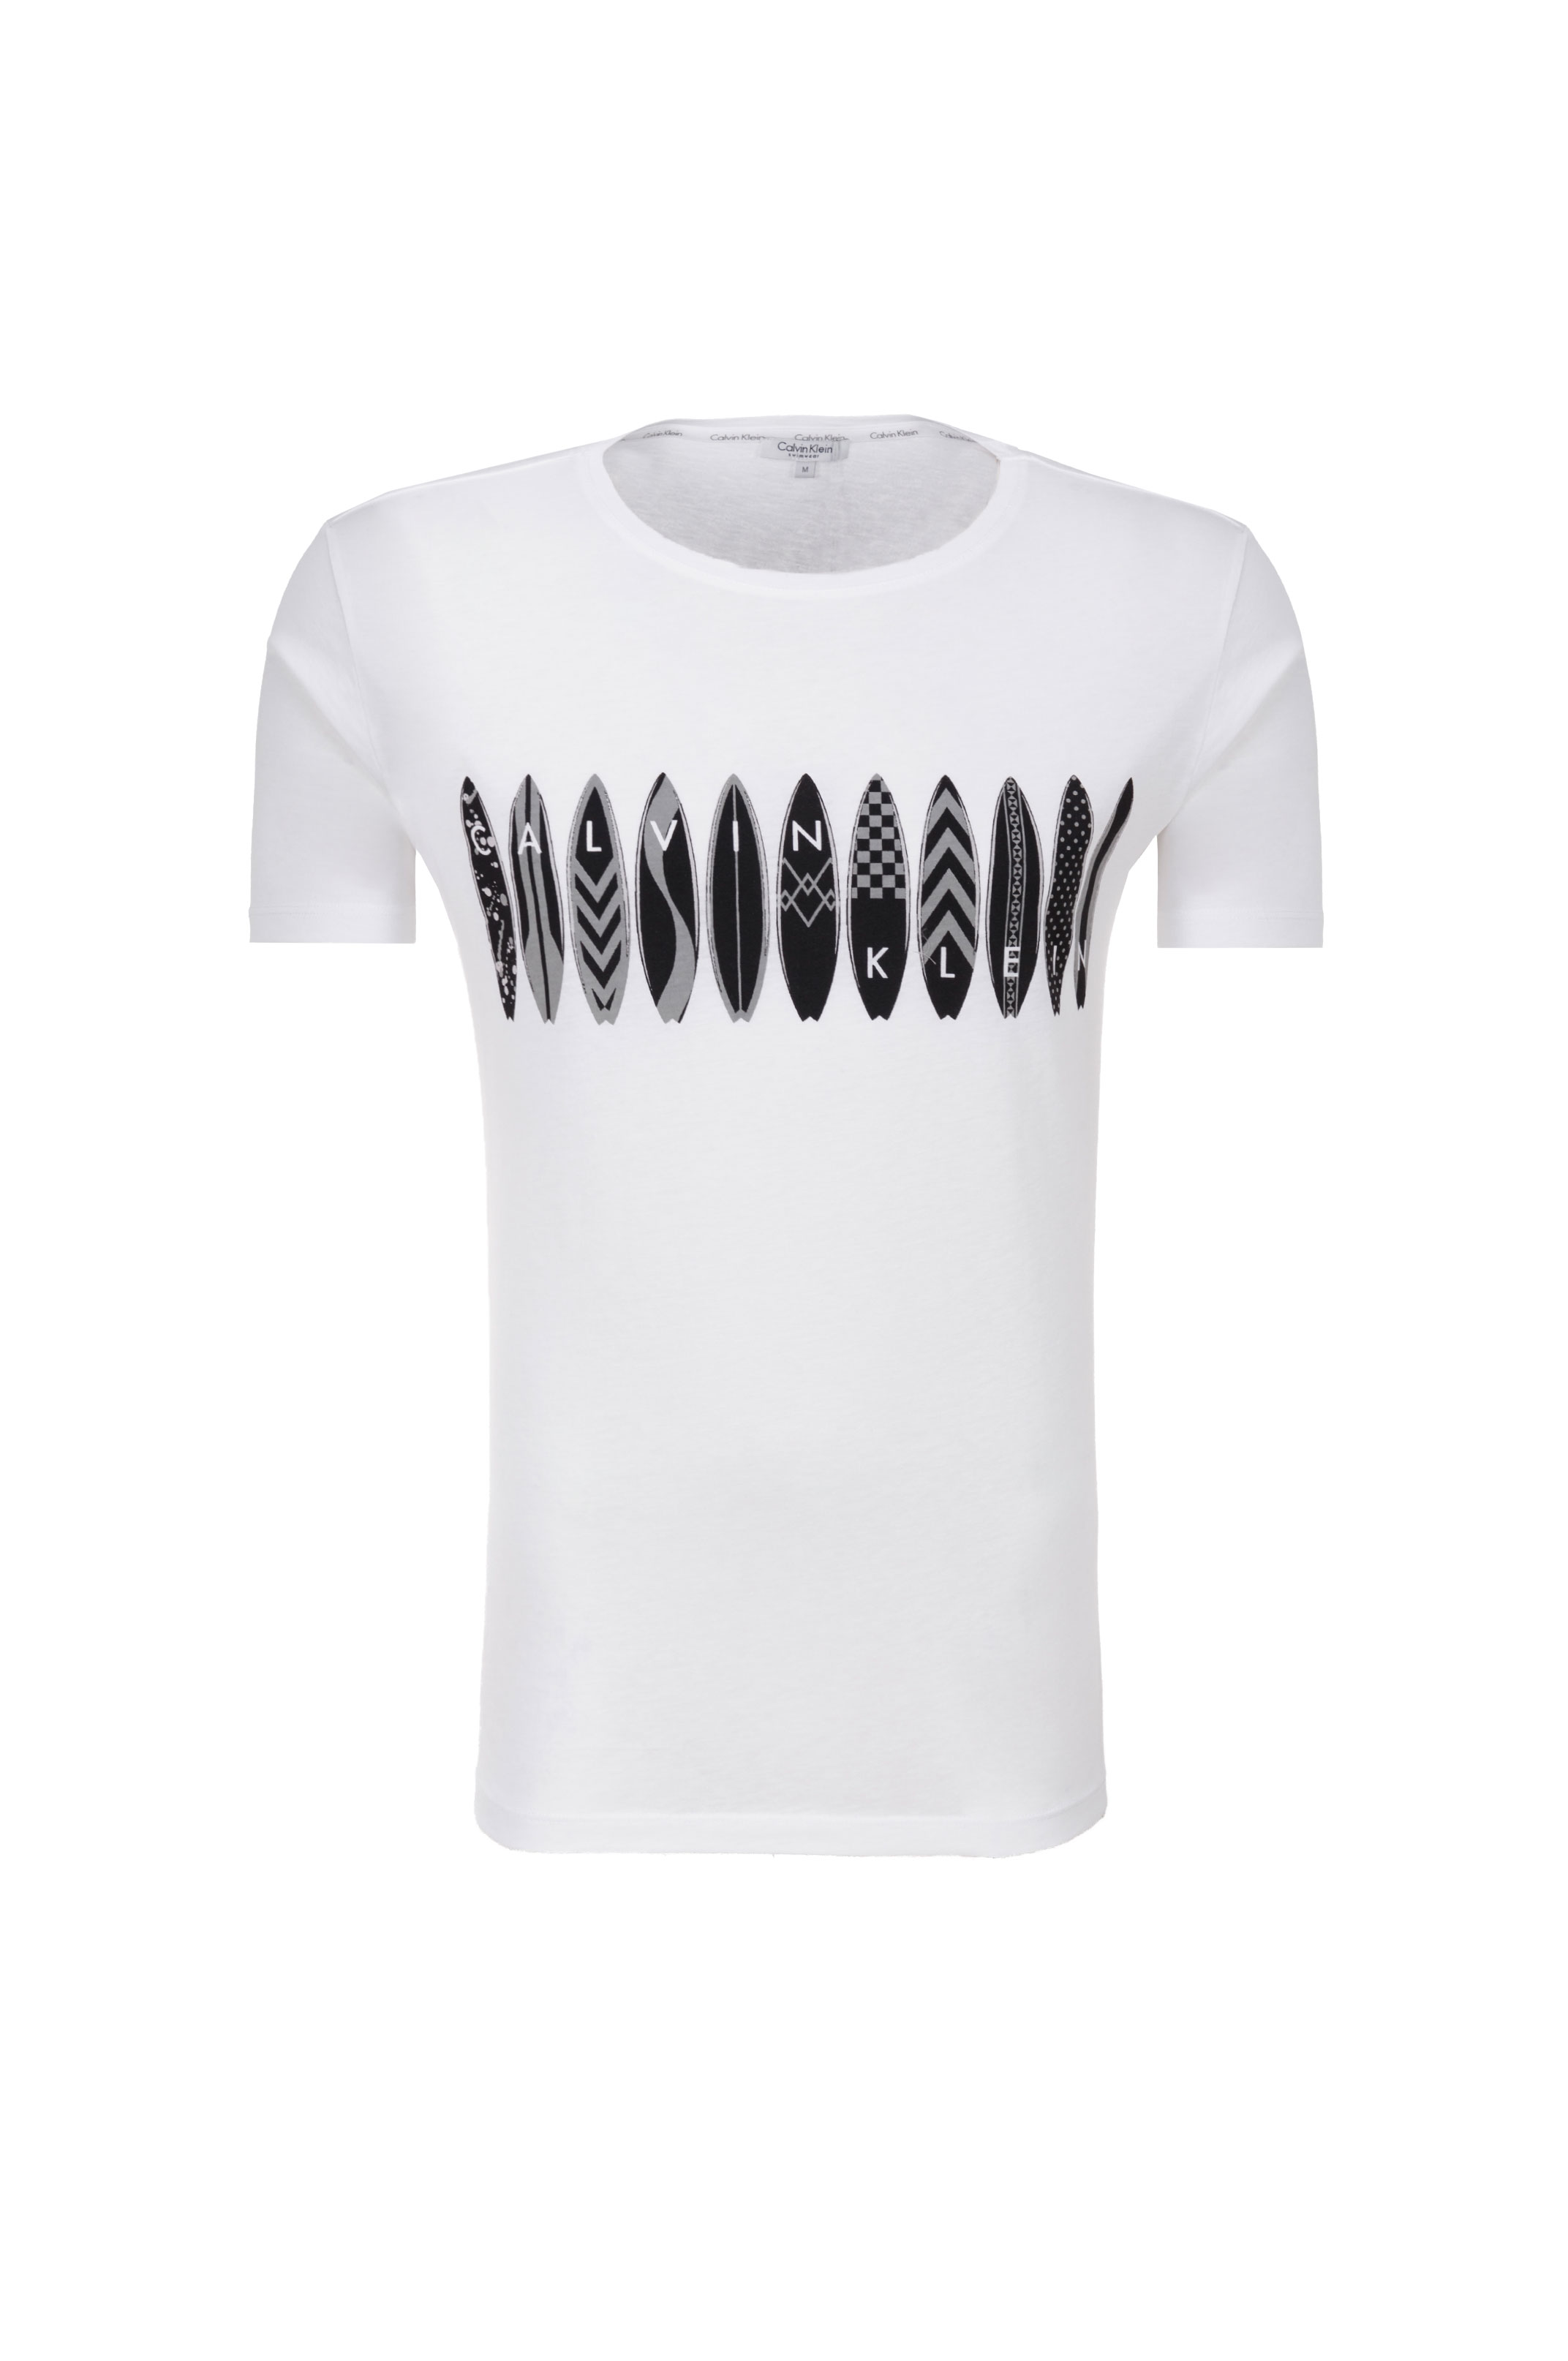 Sportovní pánské tričko od značky Calvin Klein v bílé barvě s originálním motivem